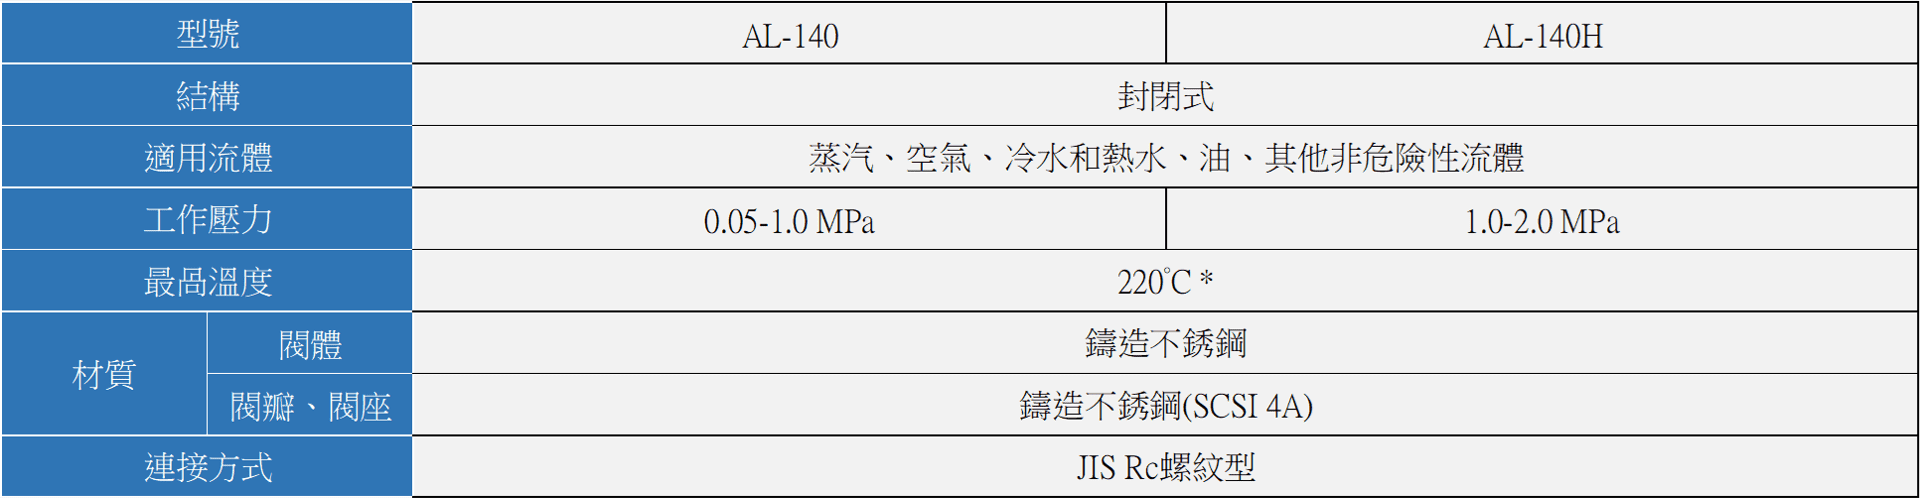 YOSHITAKE -揚程(微啟)式安全閥- AL-140/ 140H 系列